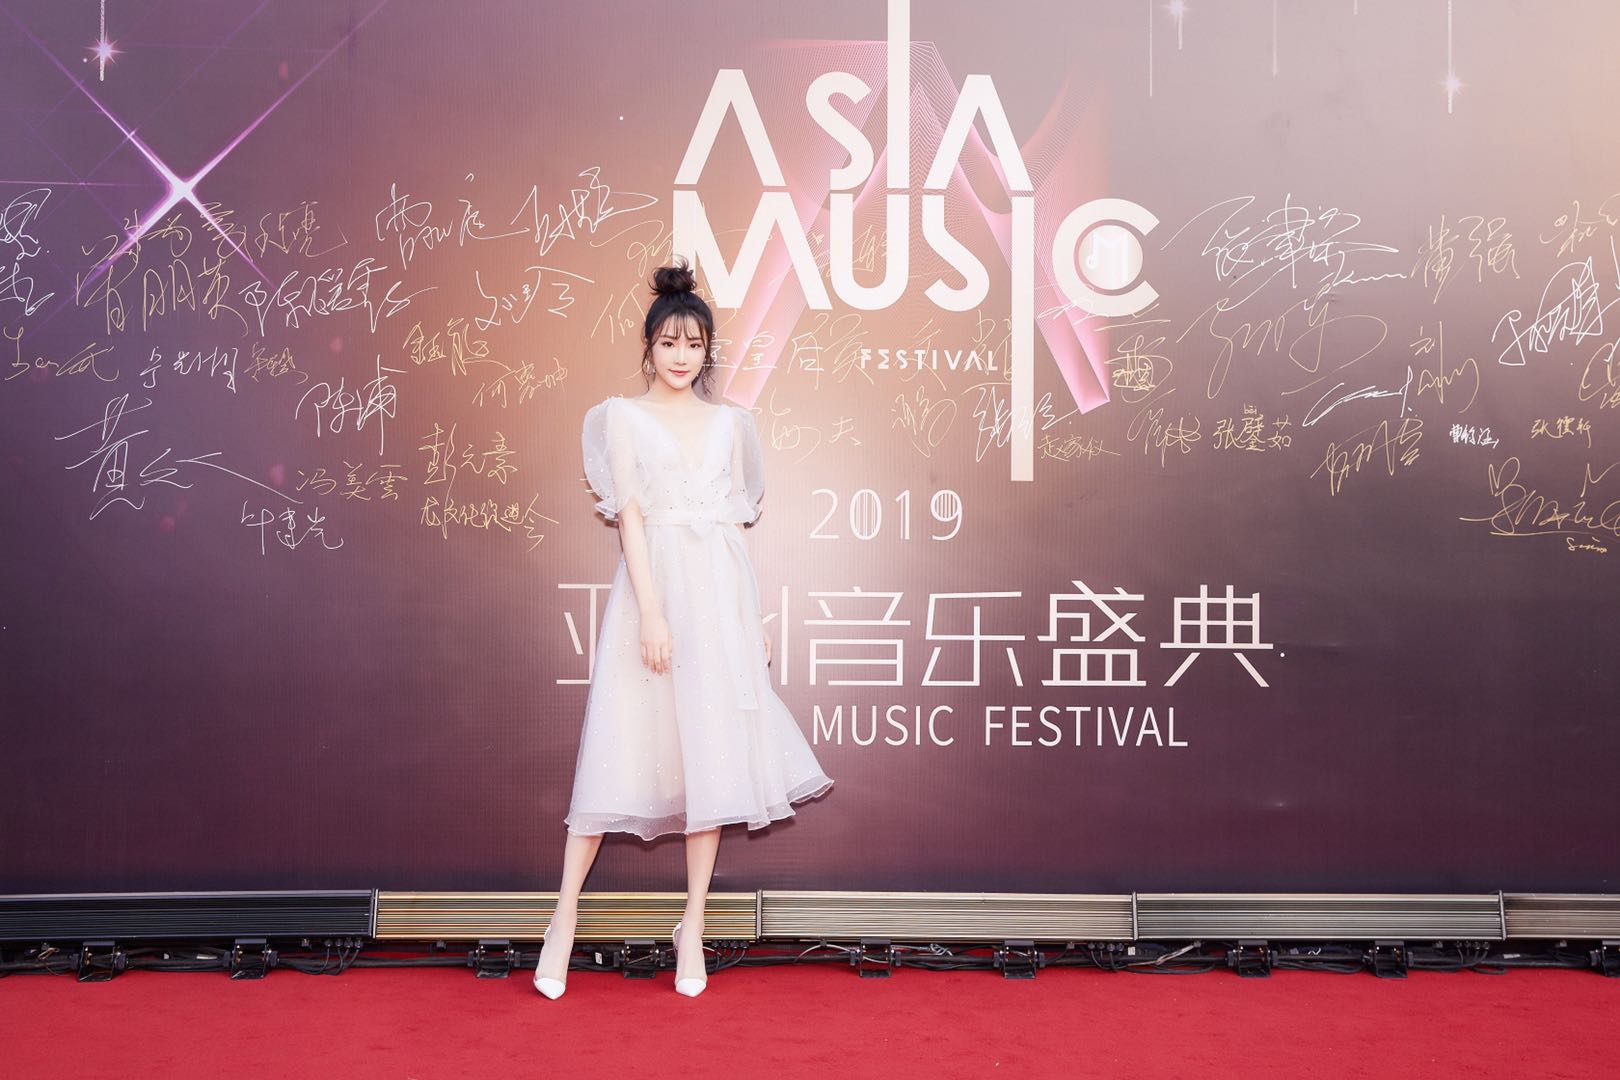 全能少女張可盈出席亞洲音樂盛典 斬獲“年度榮譽新人歌手”